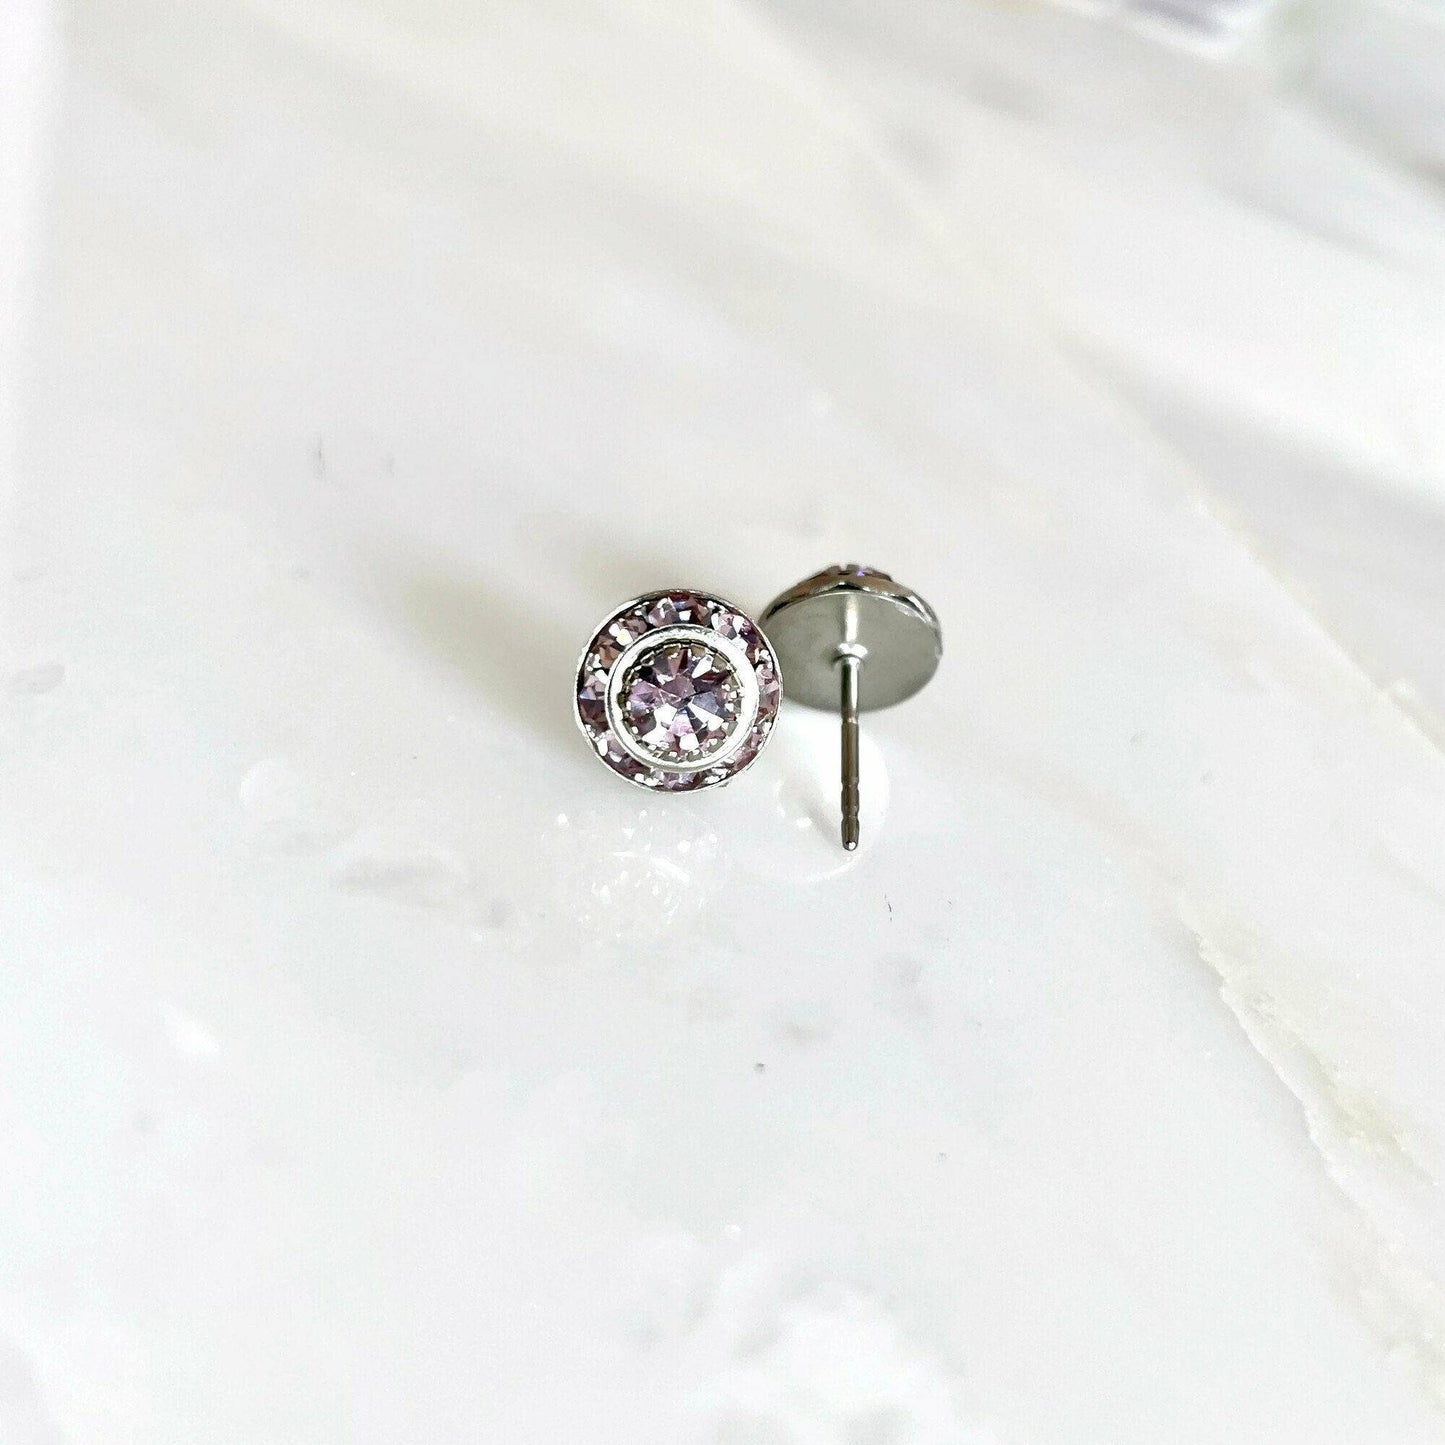 Lavender crystal stud earrings